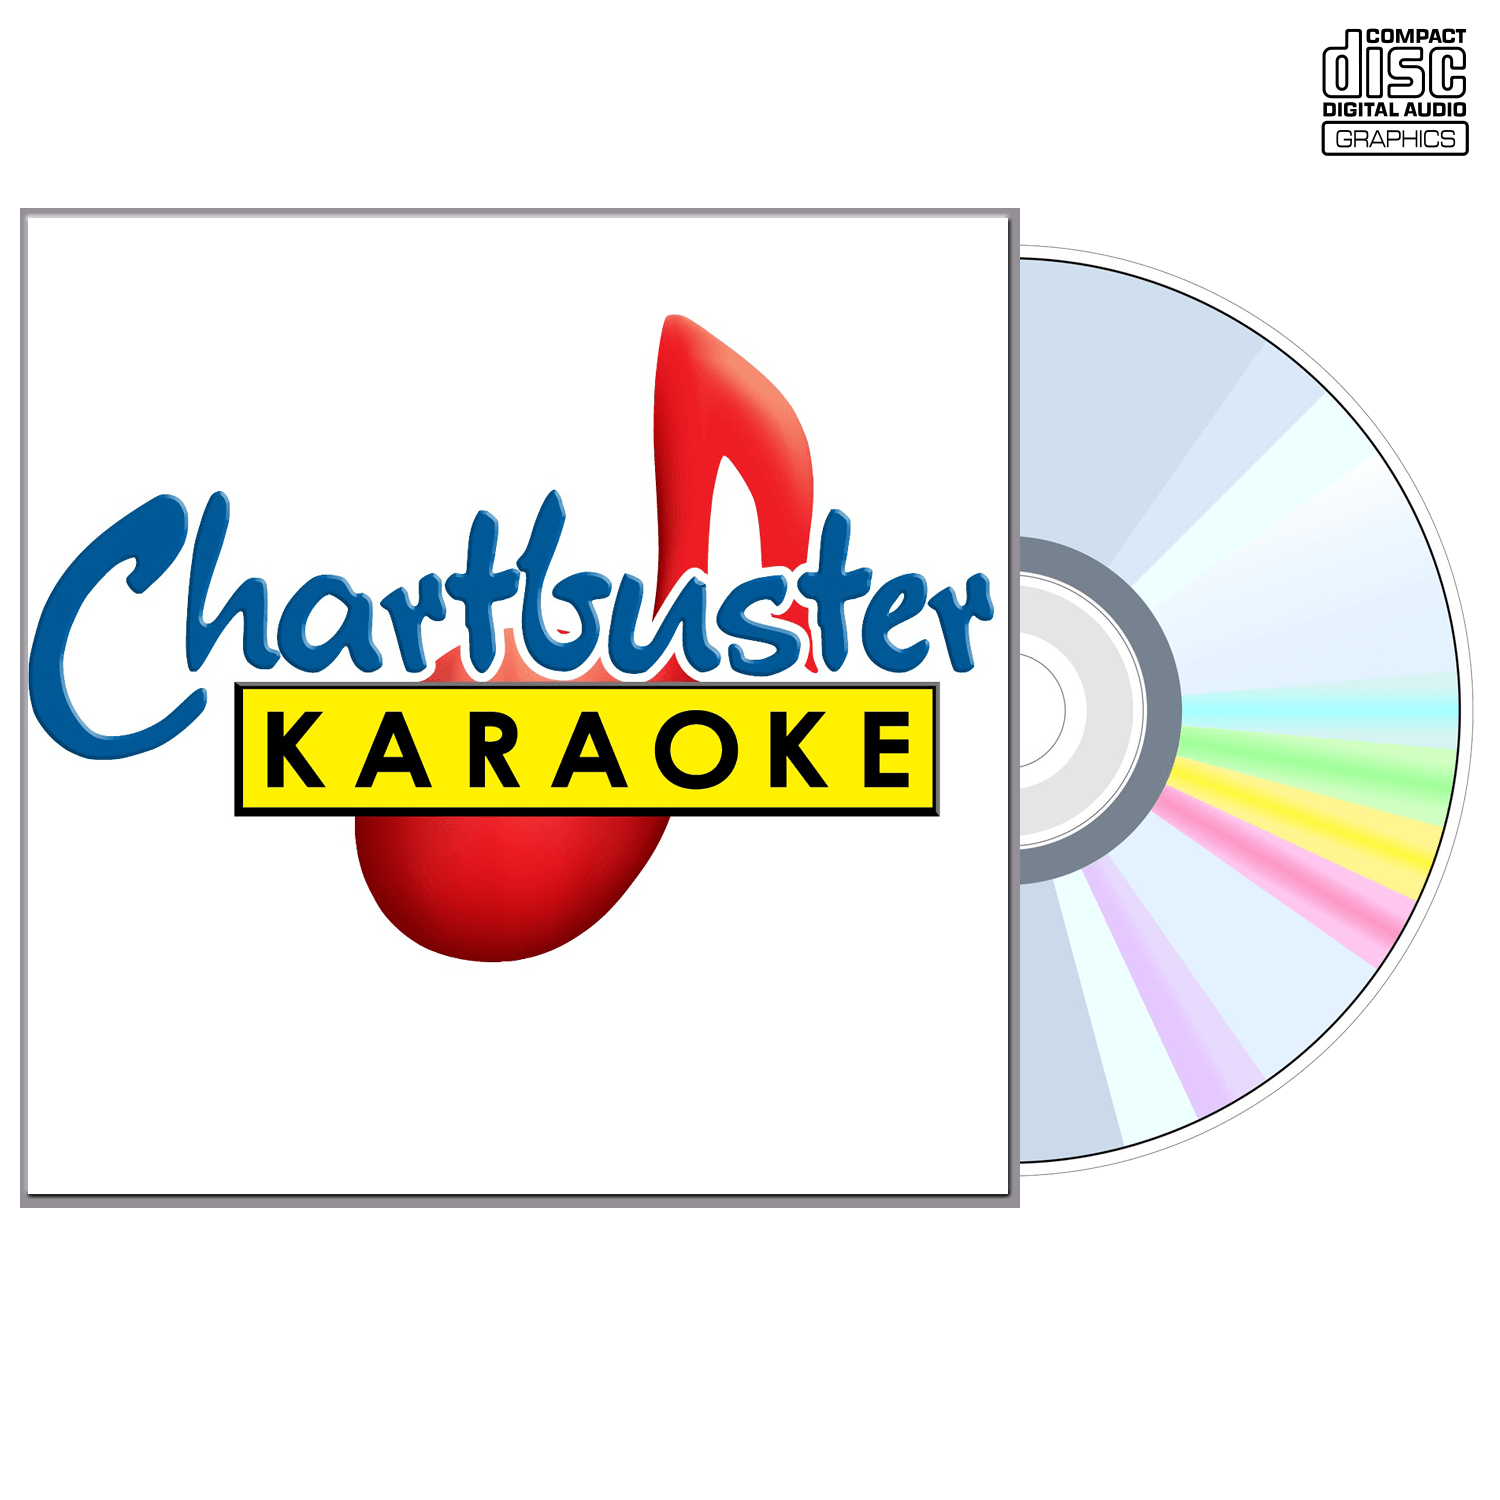 Sheena Easton - CD+G - Chartbuster Karaoke - Karaoke Home Entertainment